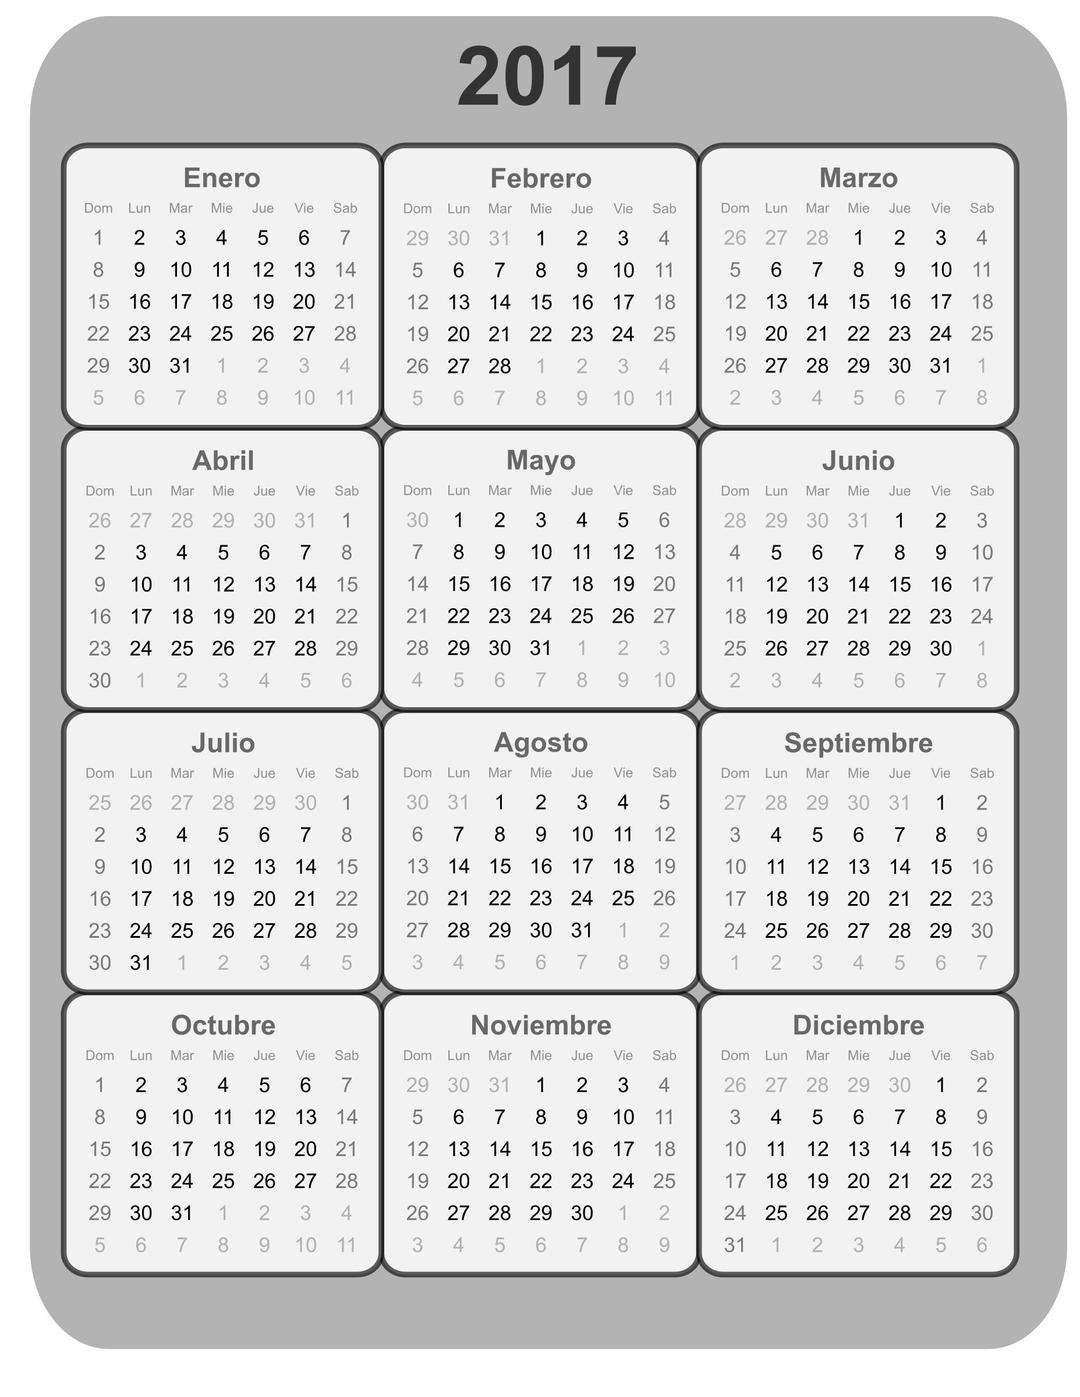 Calendario 2017 B/N png transparent